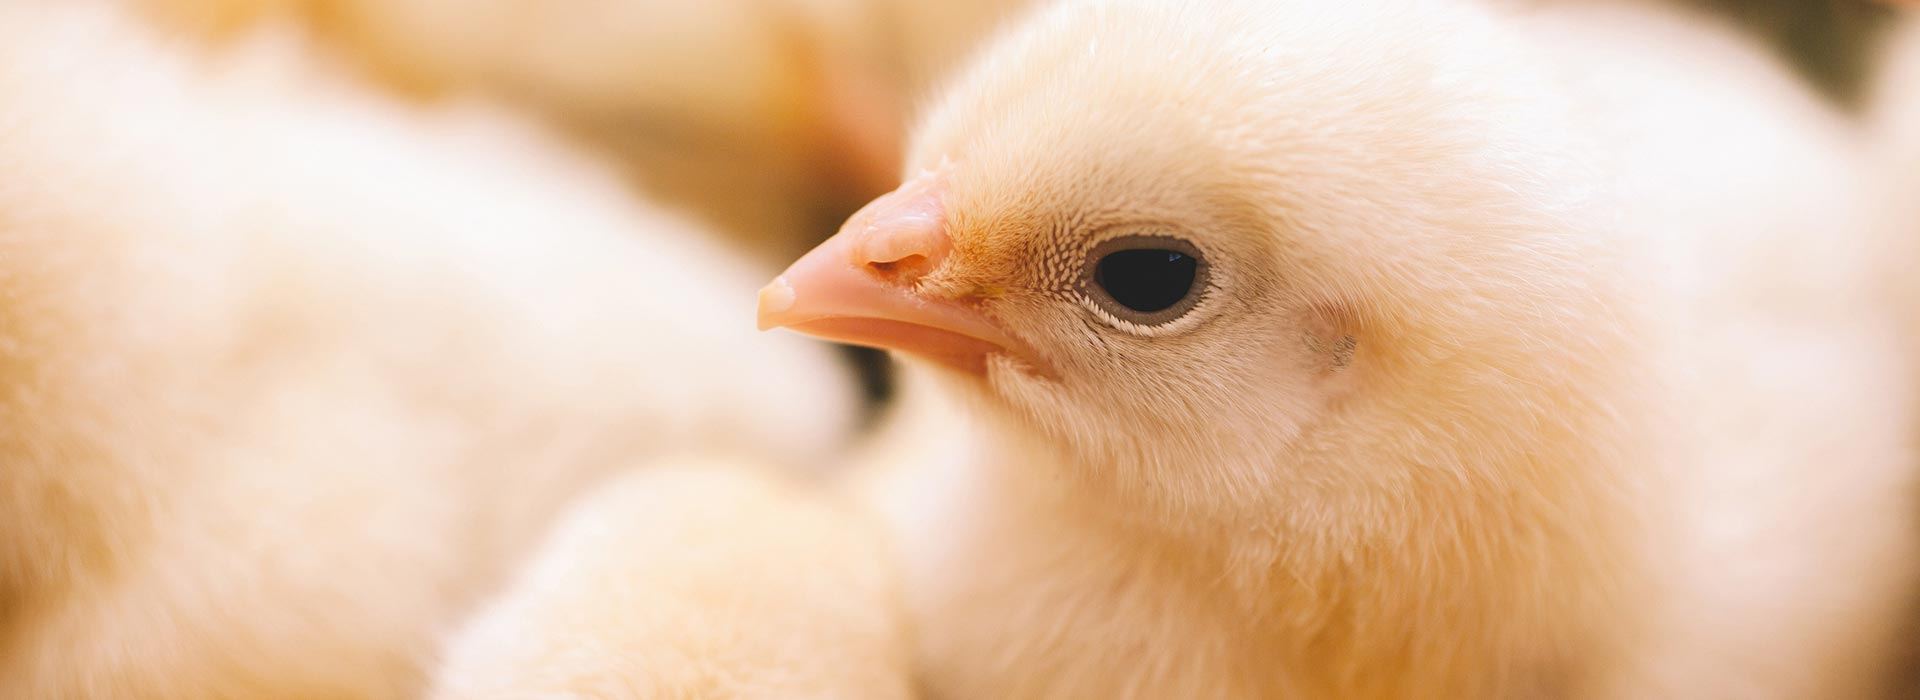 Alltech nutrição animal para avicultura